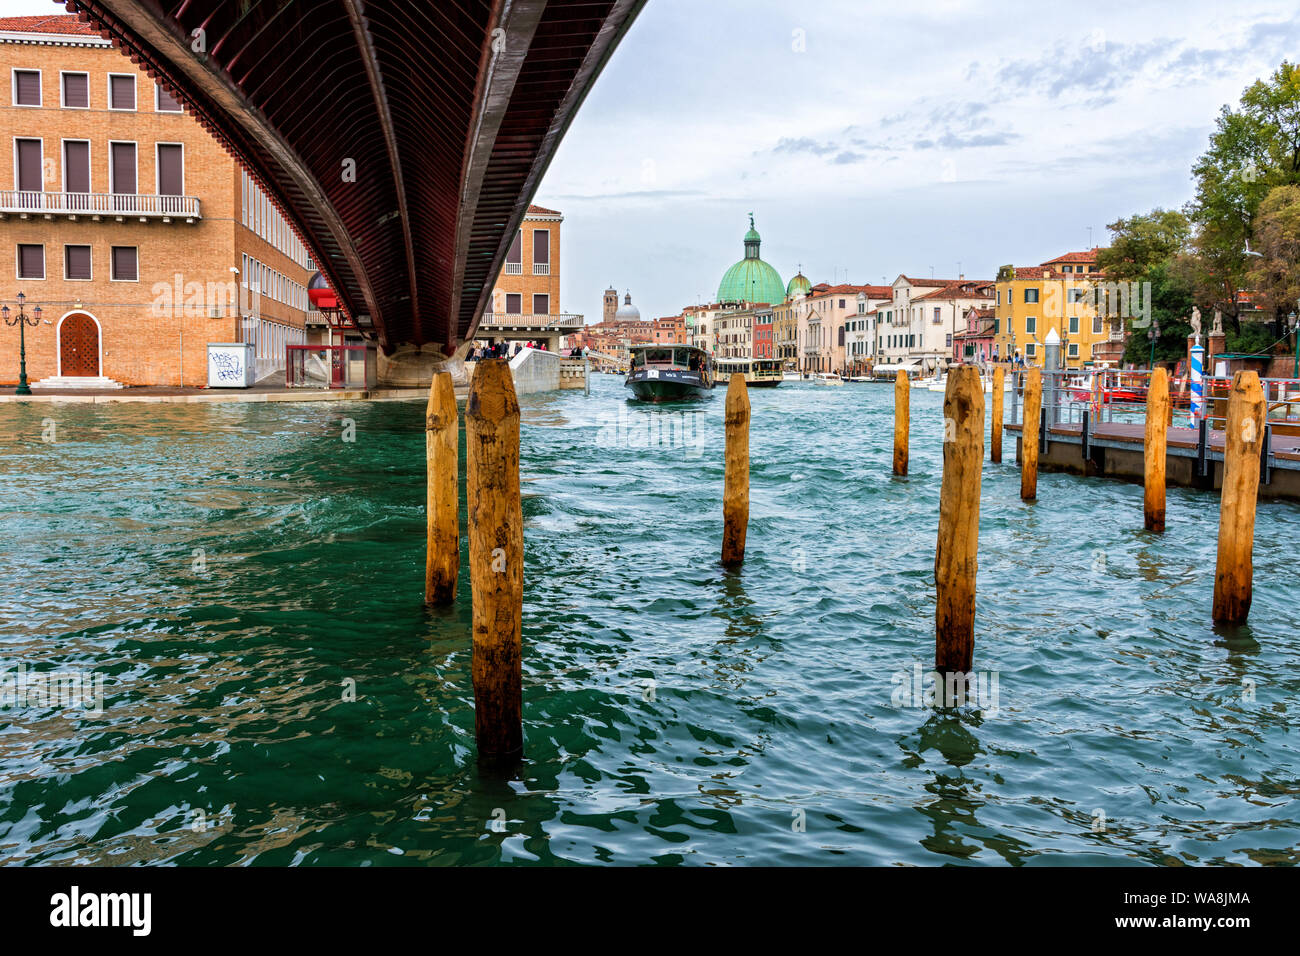 Le Grand Canal de sous le pont de la Constitution (Constitution) Pont de Venise, Italie Banque D'Images